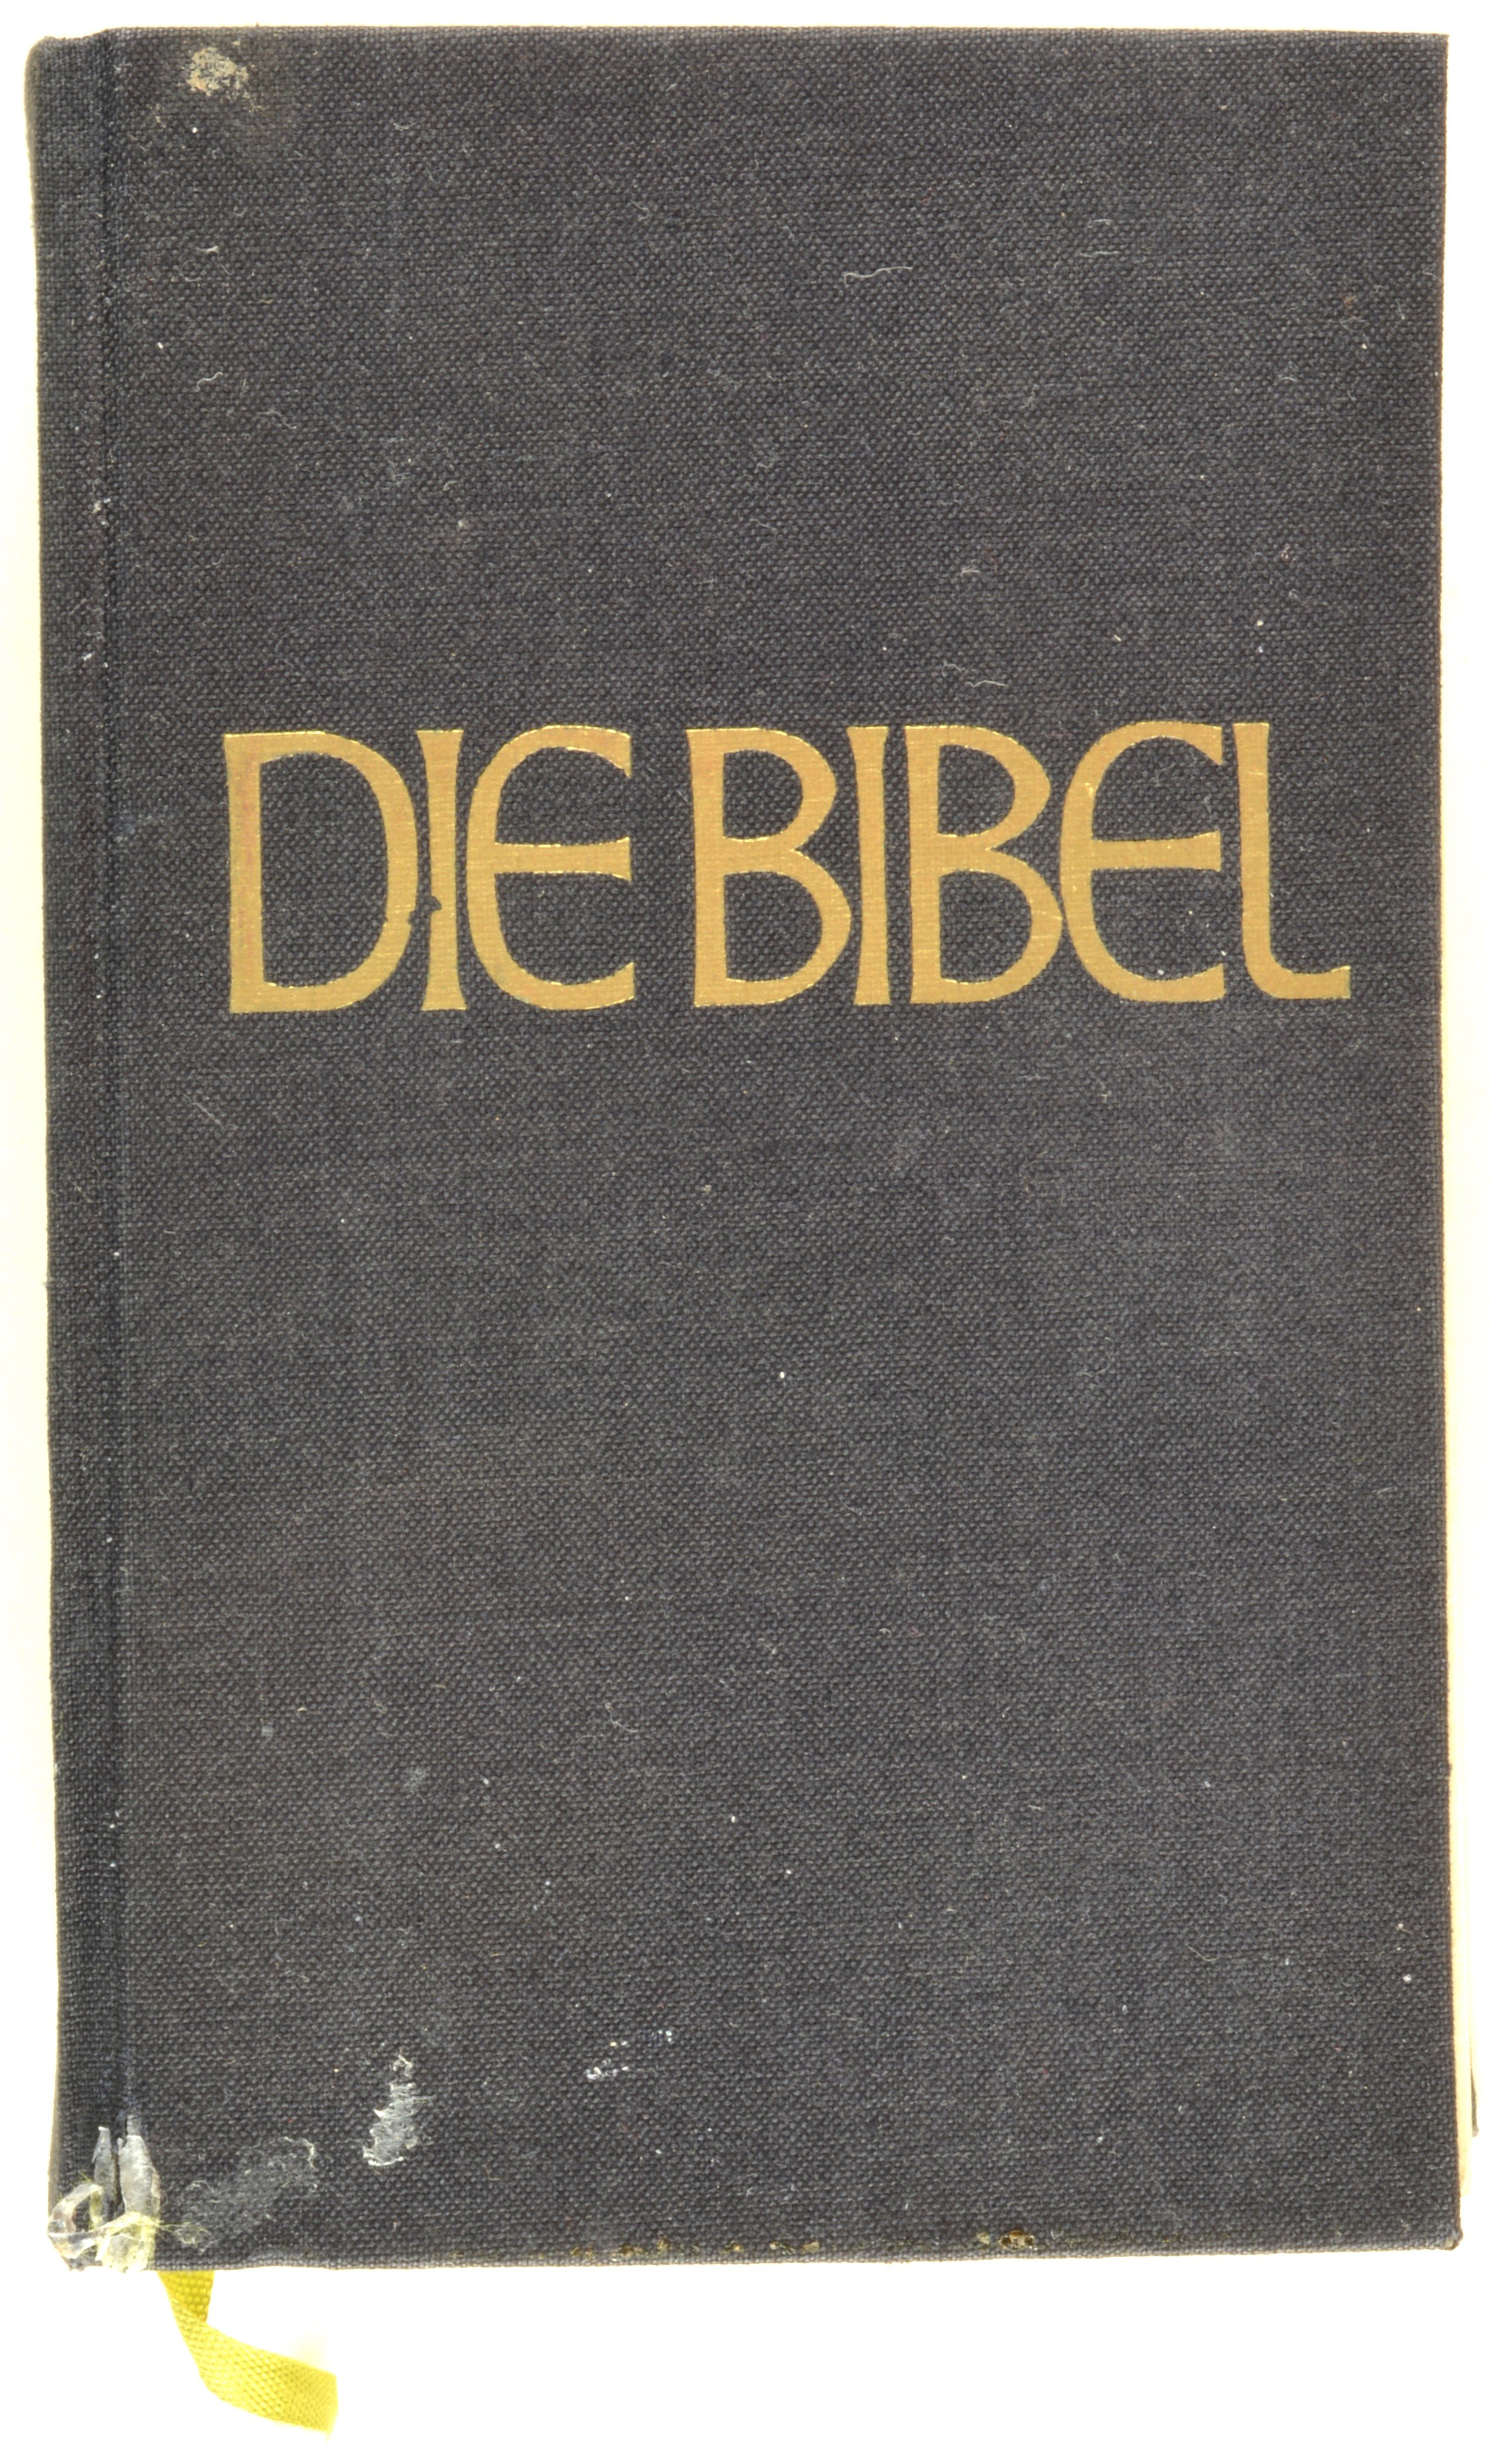 Buch: Die Bibel. Nach der deutschen Übersetzung D. Martin Luthers, Altenburg 1971 (DDR Geschichtsmuseum im Dokumentationszentrum Perleberg CC BY-SA)